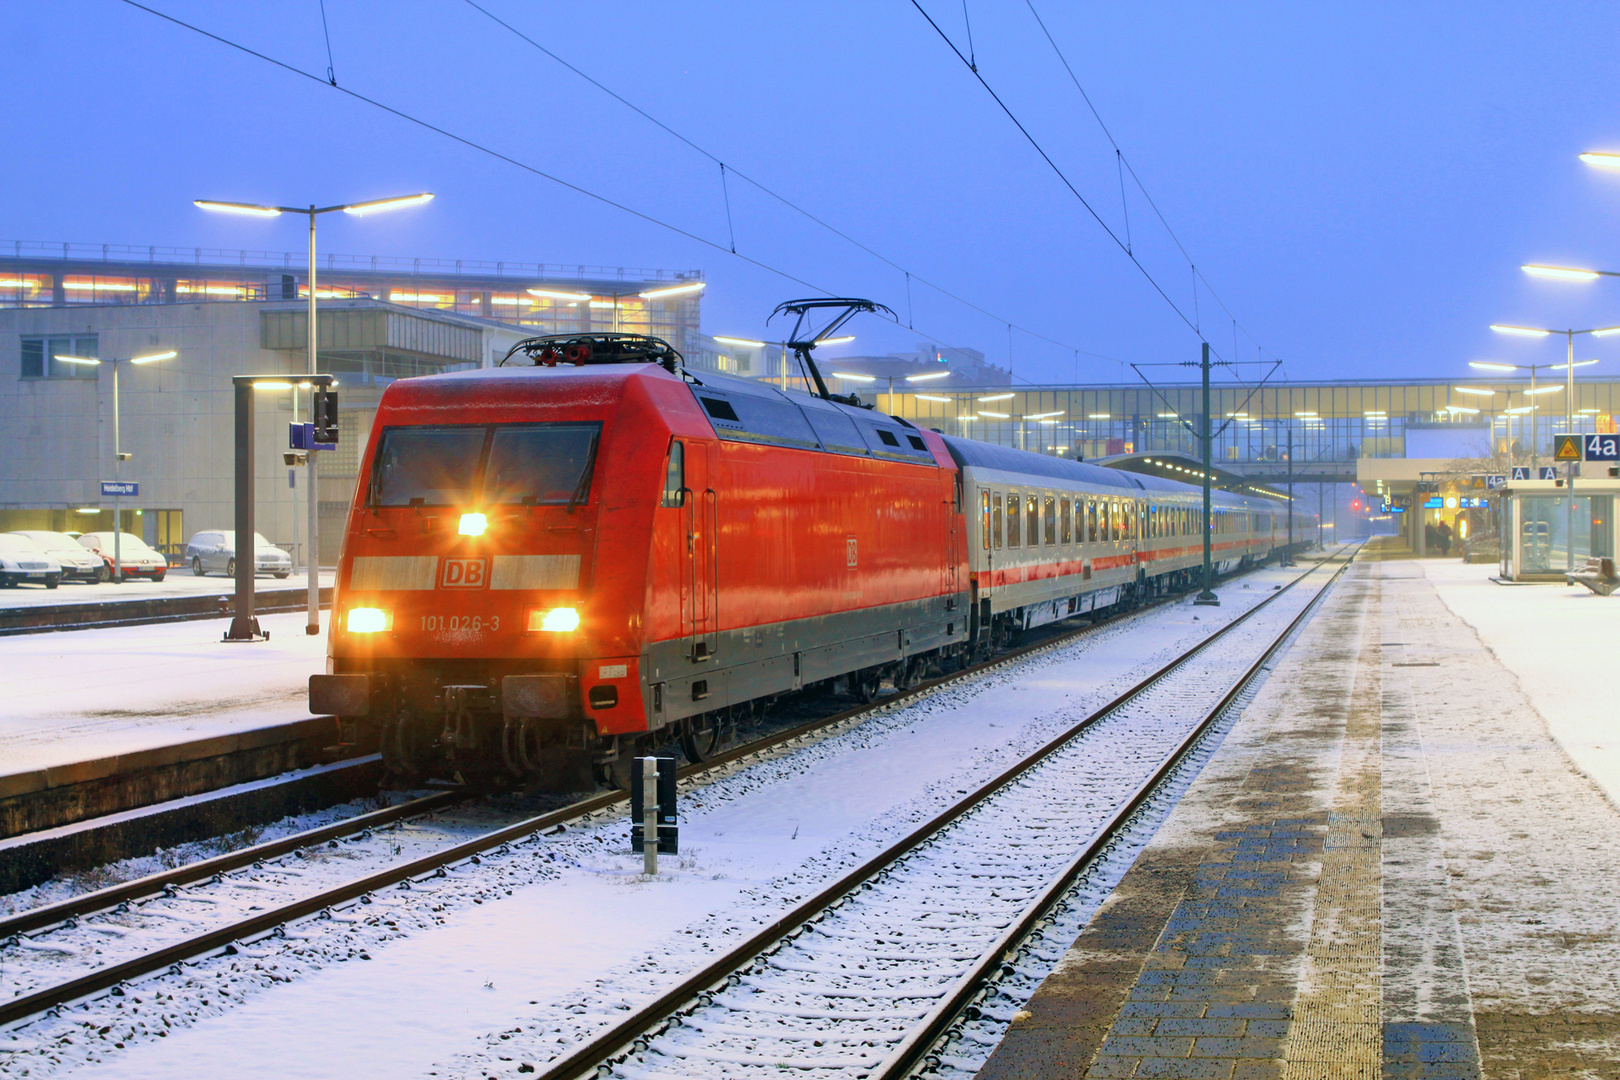 101 026 mit Intercity im winterlichen Heidelberg